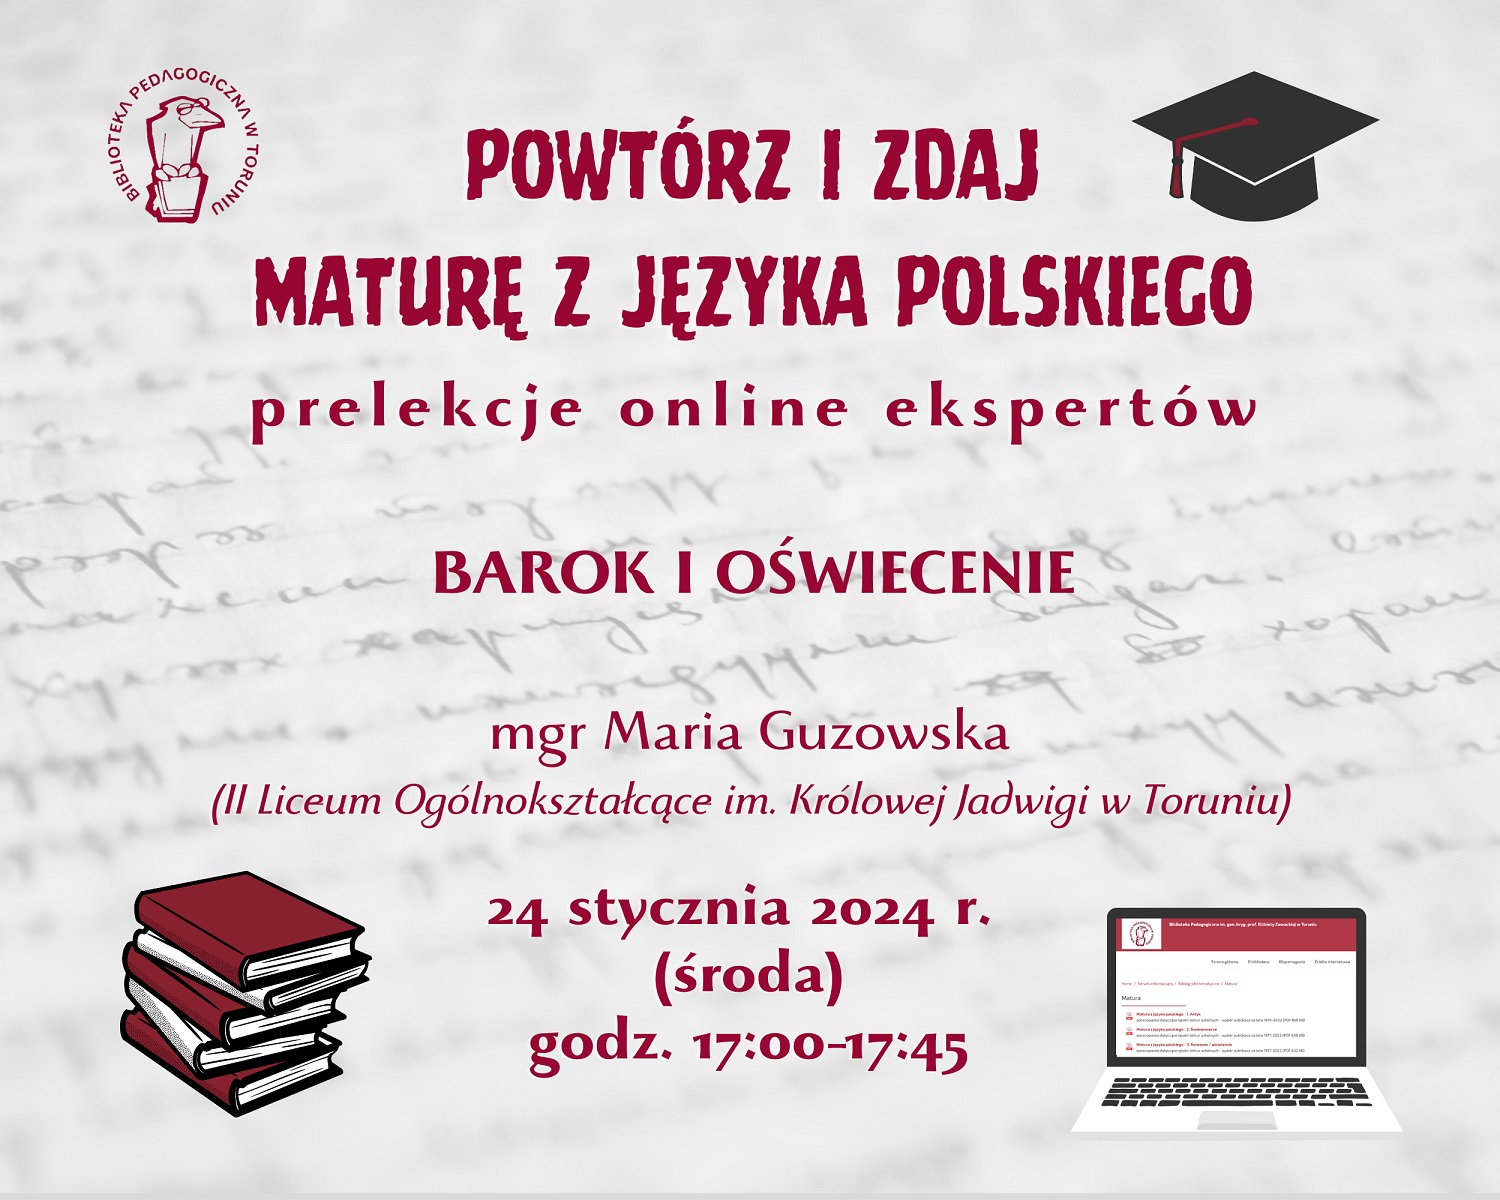 Grafika zapraszająca do udziału w cyklu. W lewym górnym rogu logo Biblioteki Pedagogicznej w Toruniu, w prawym górnym rogu czarna czapka absolwencka. W lewym dolnym stos książek, w prawym dolnym laptop